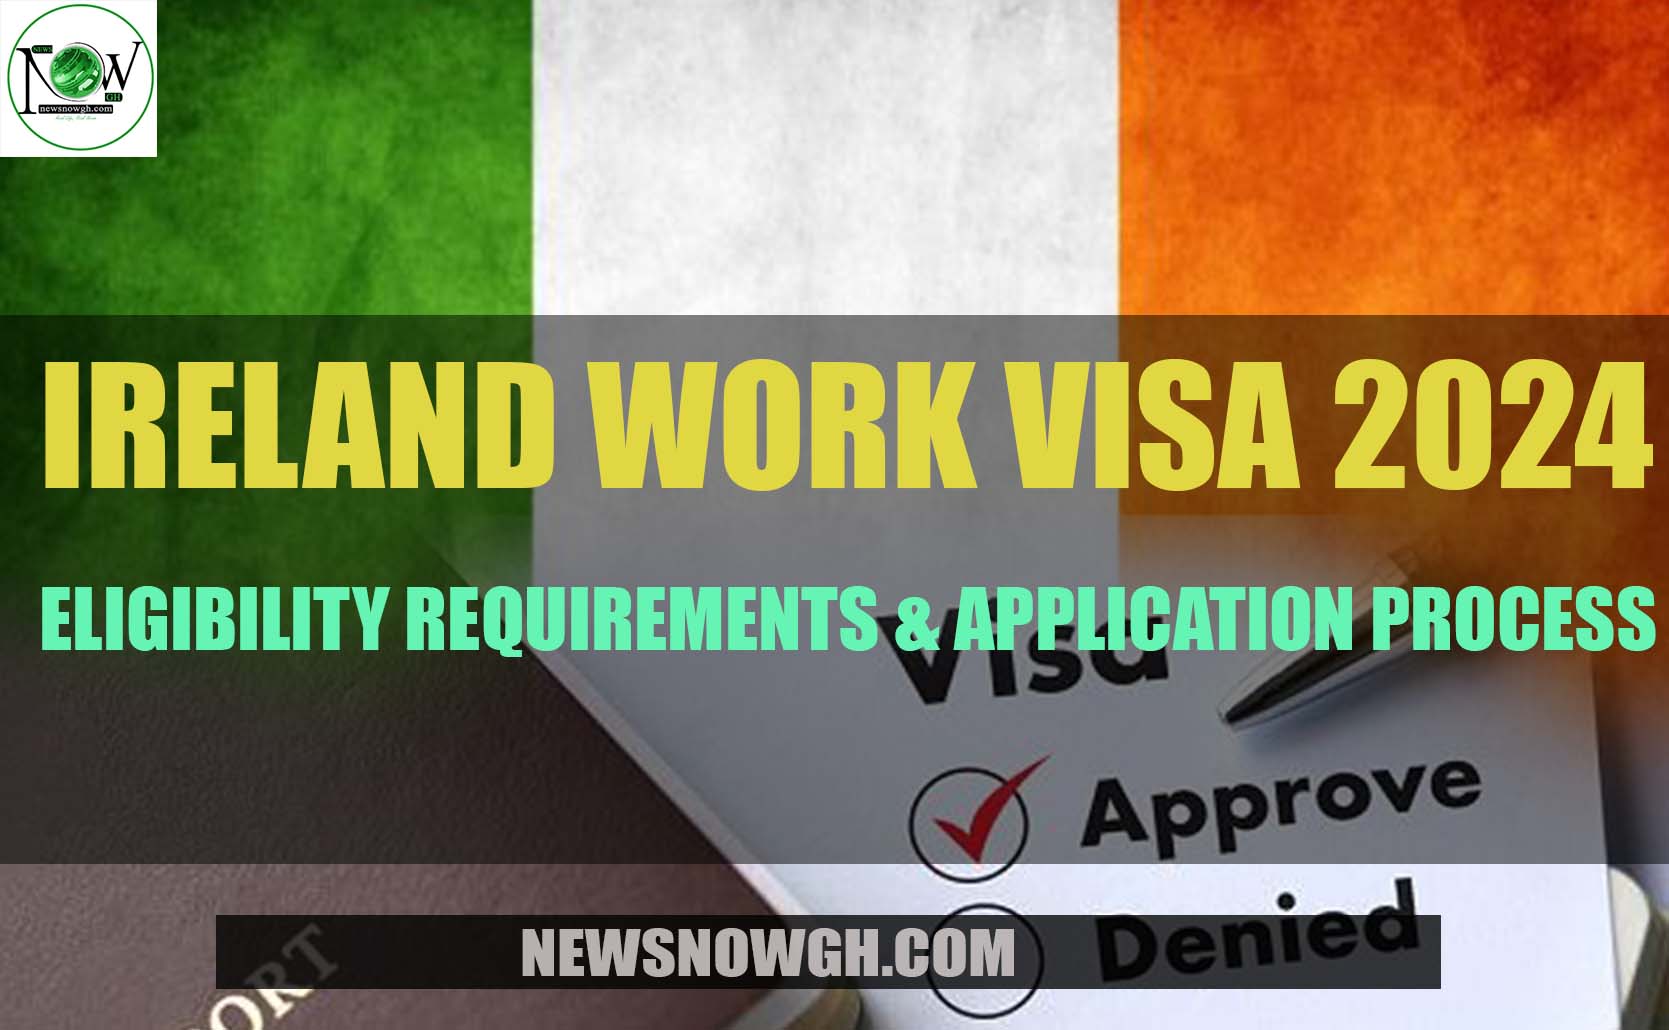 Ireland Work Visa 